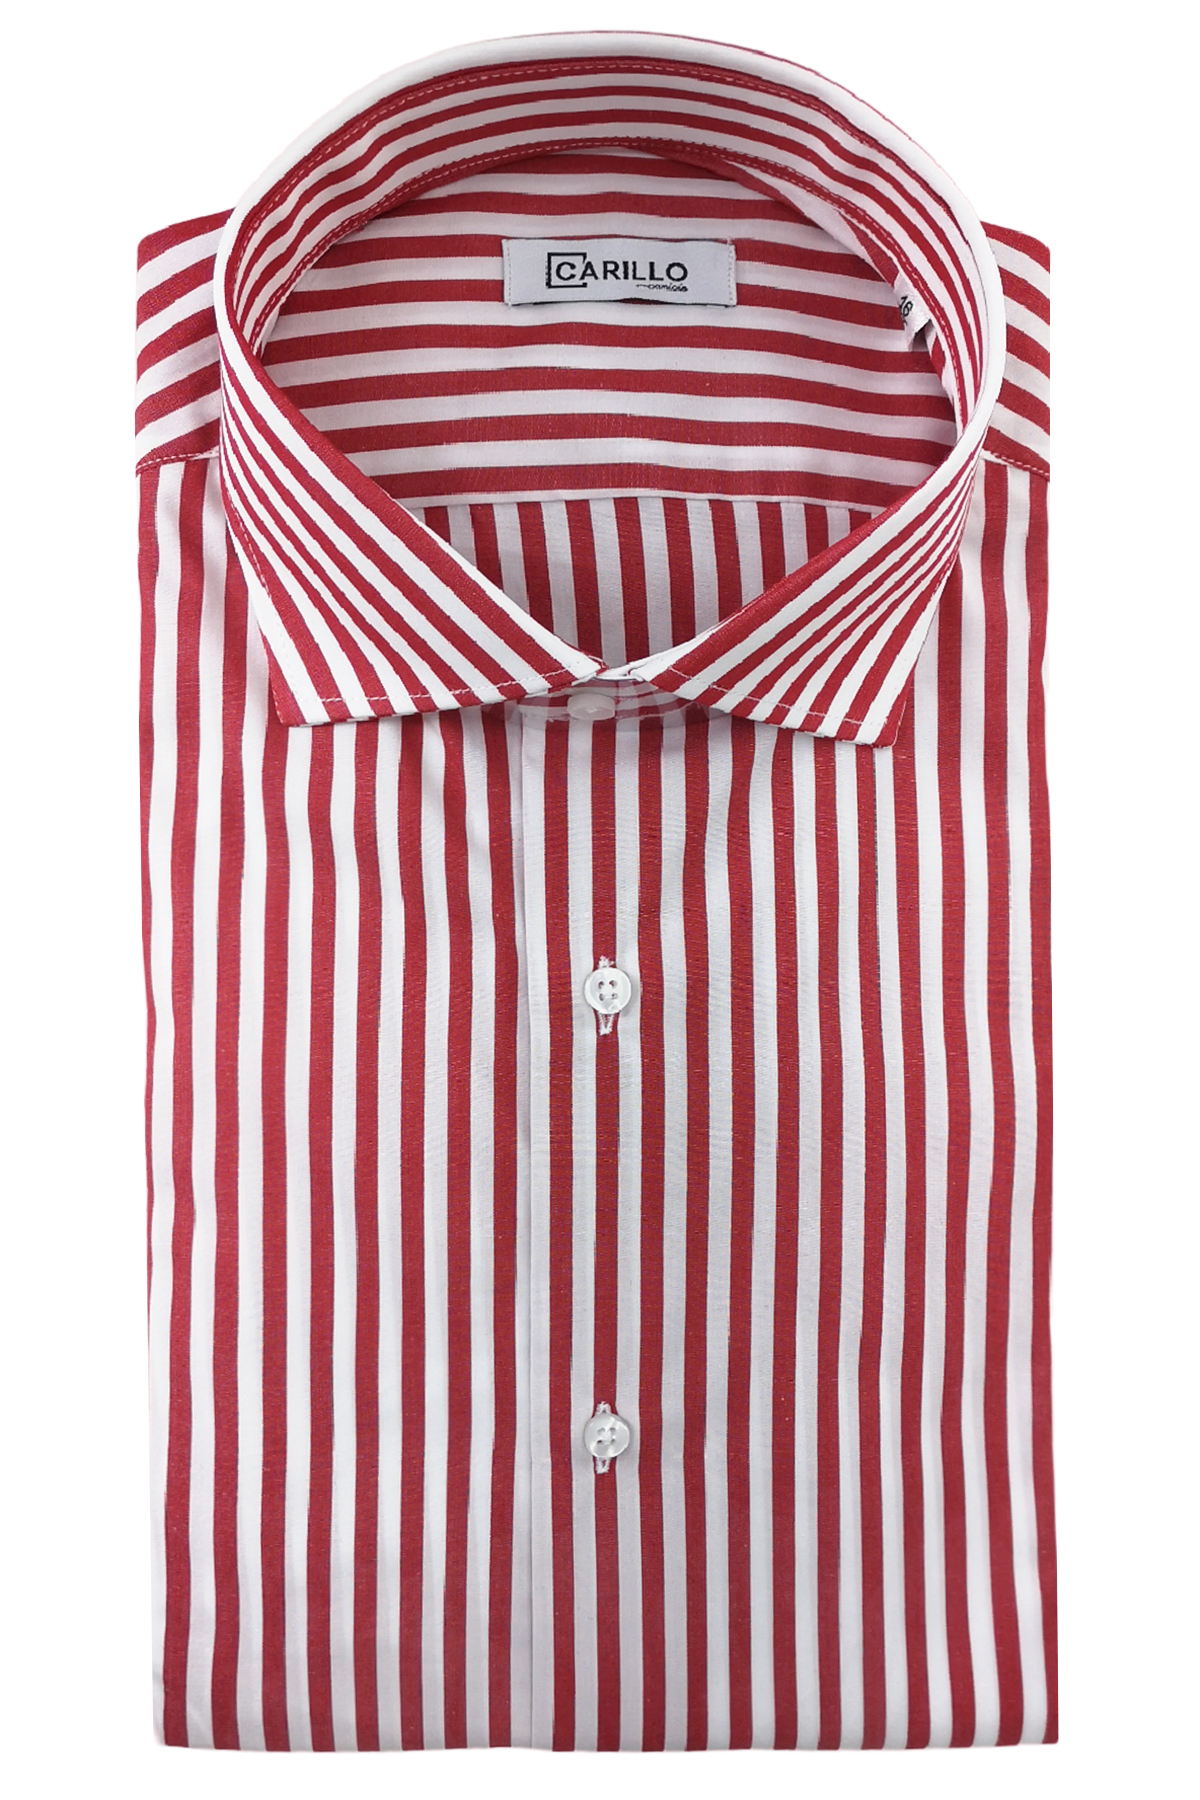 Camicia Uomo riga media 100% cotone collo semi francese Regular Fit made in italy Casual e Elegante